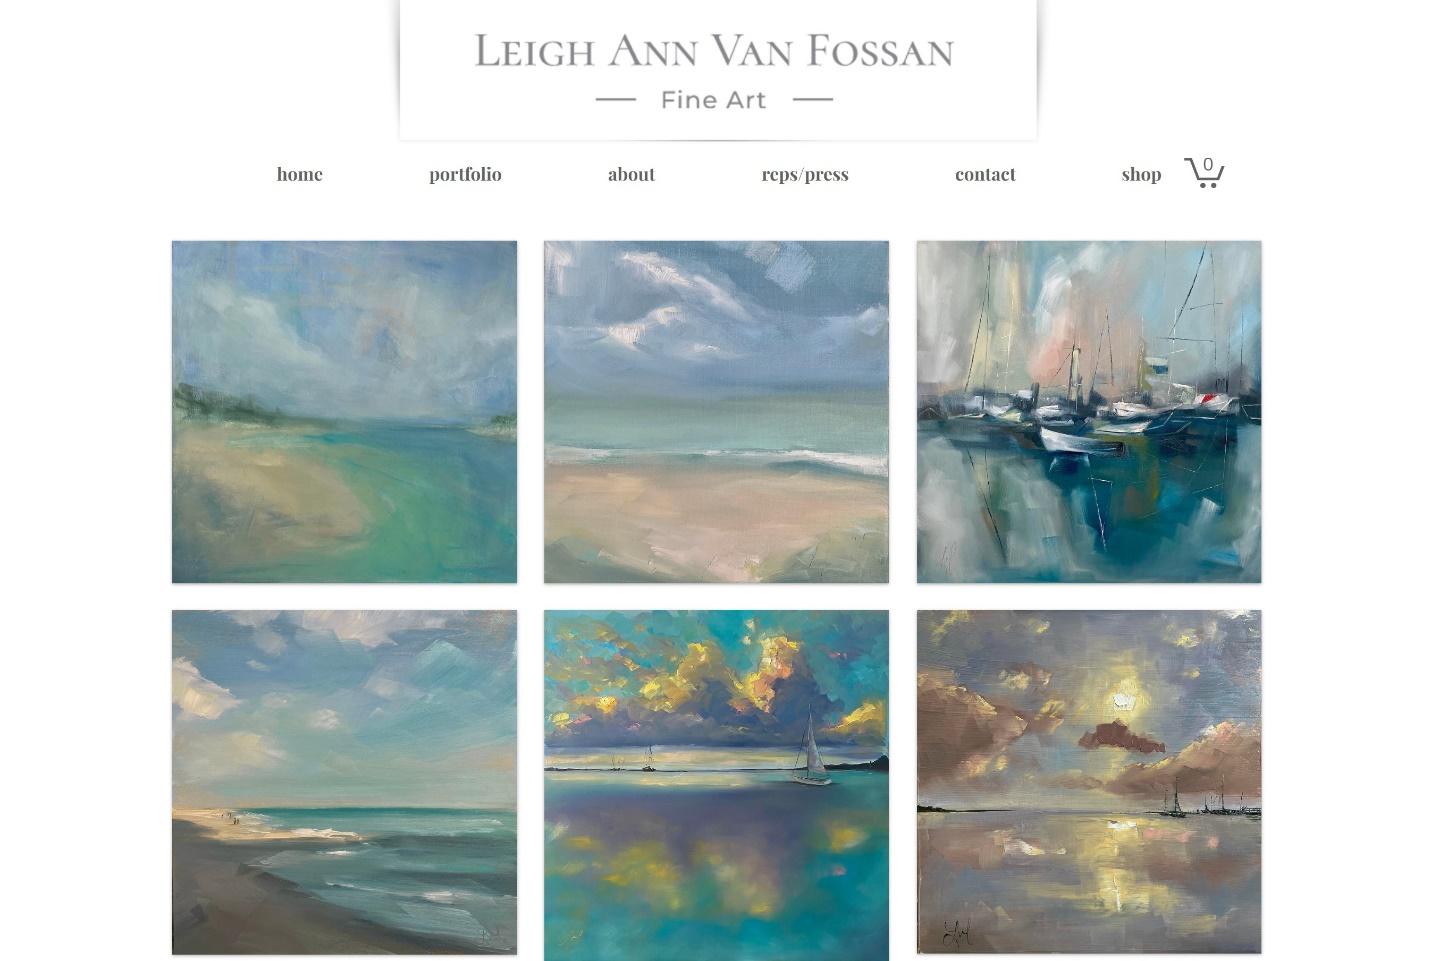 Leigh Ann Van Fossan art portfolio website gallery page.